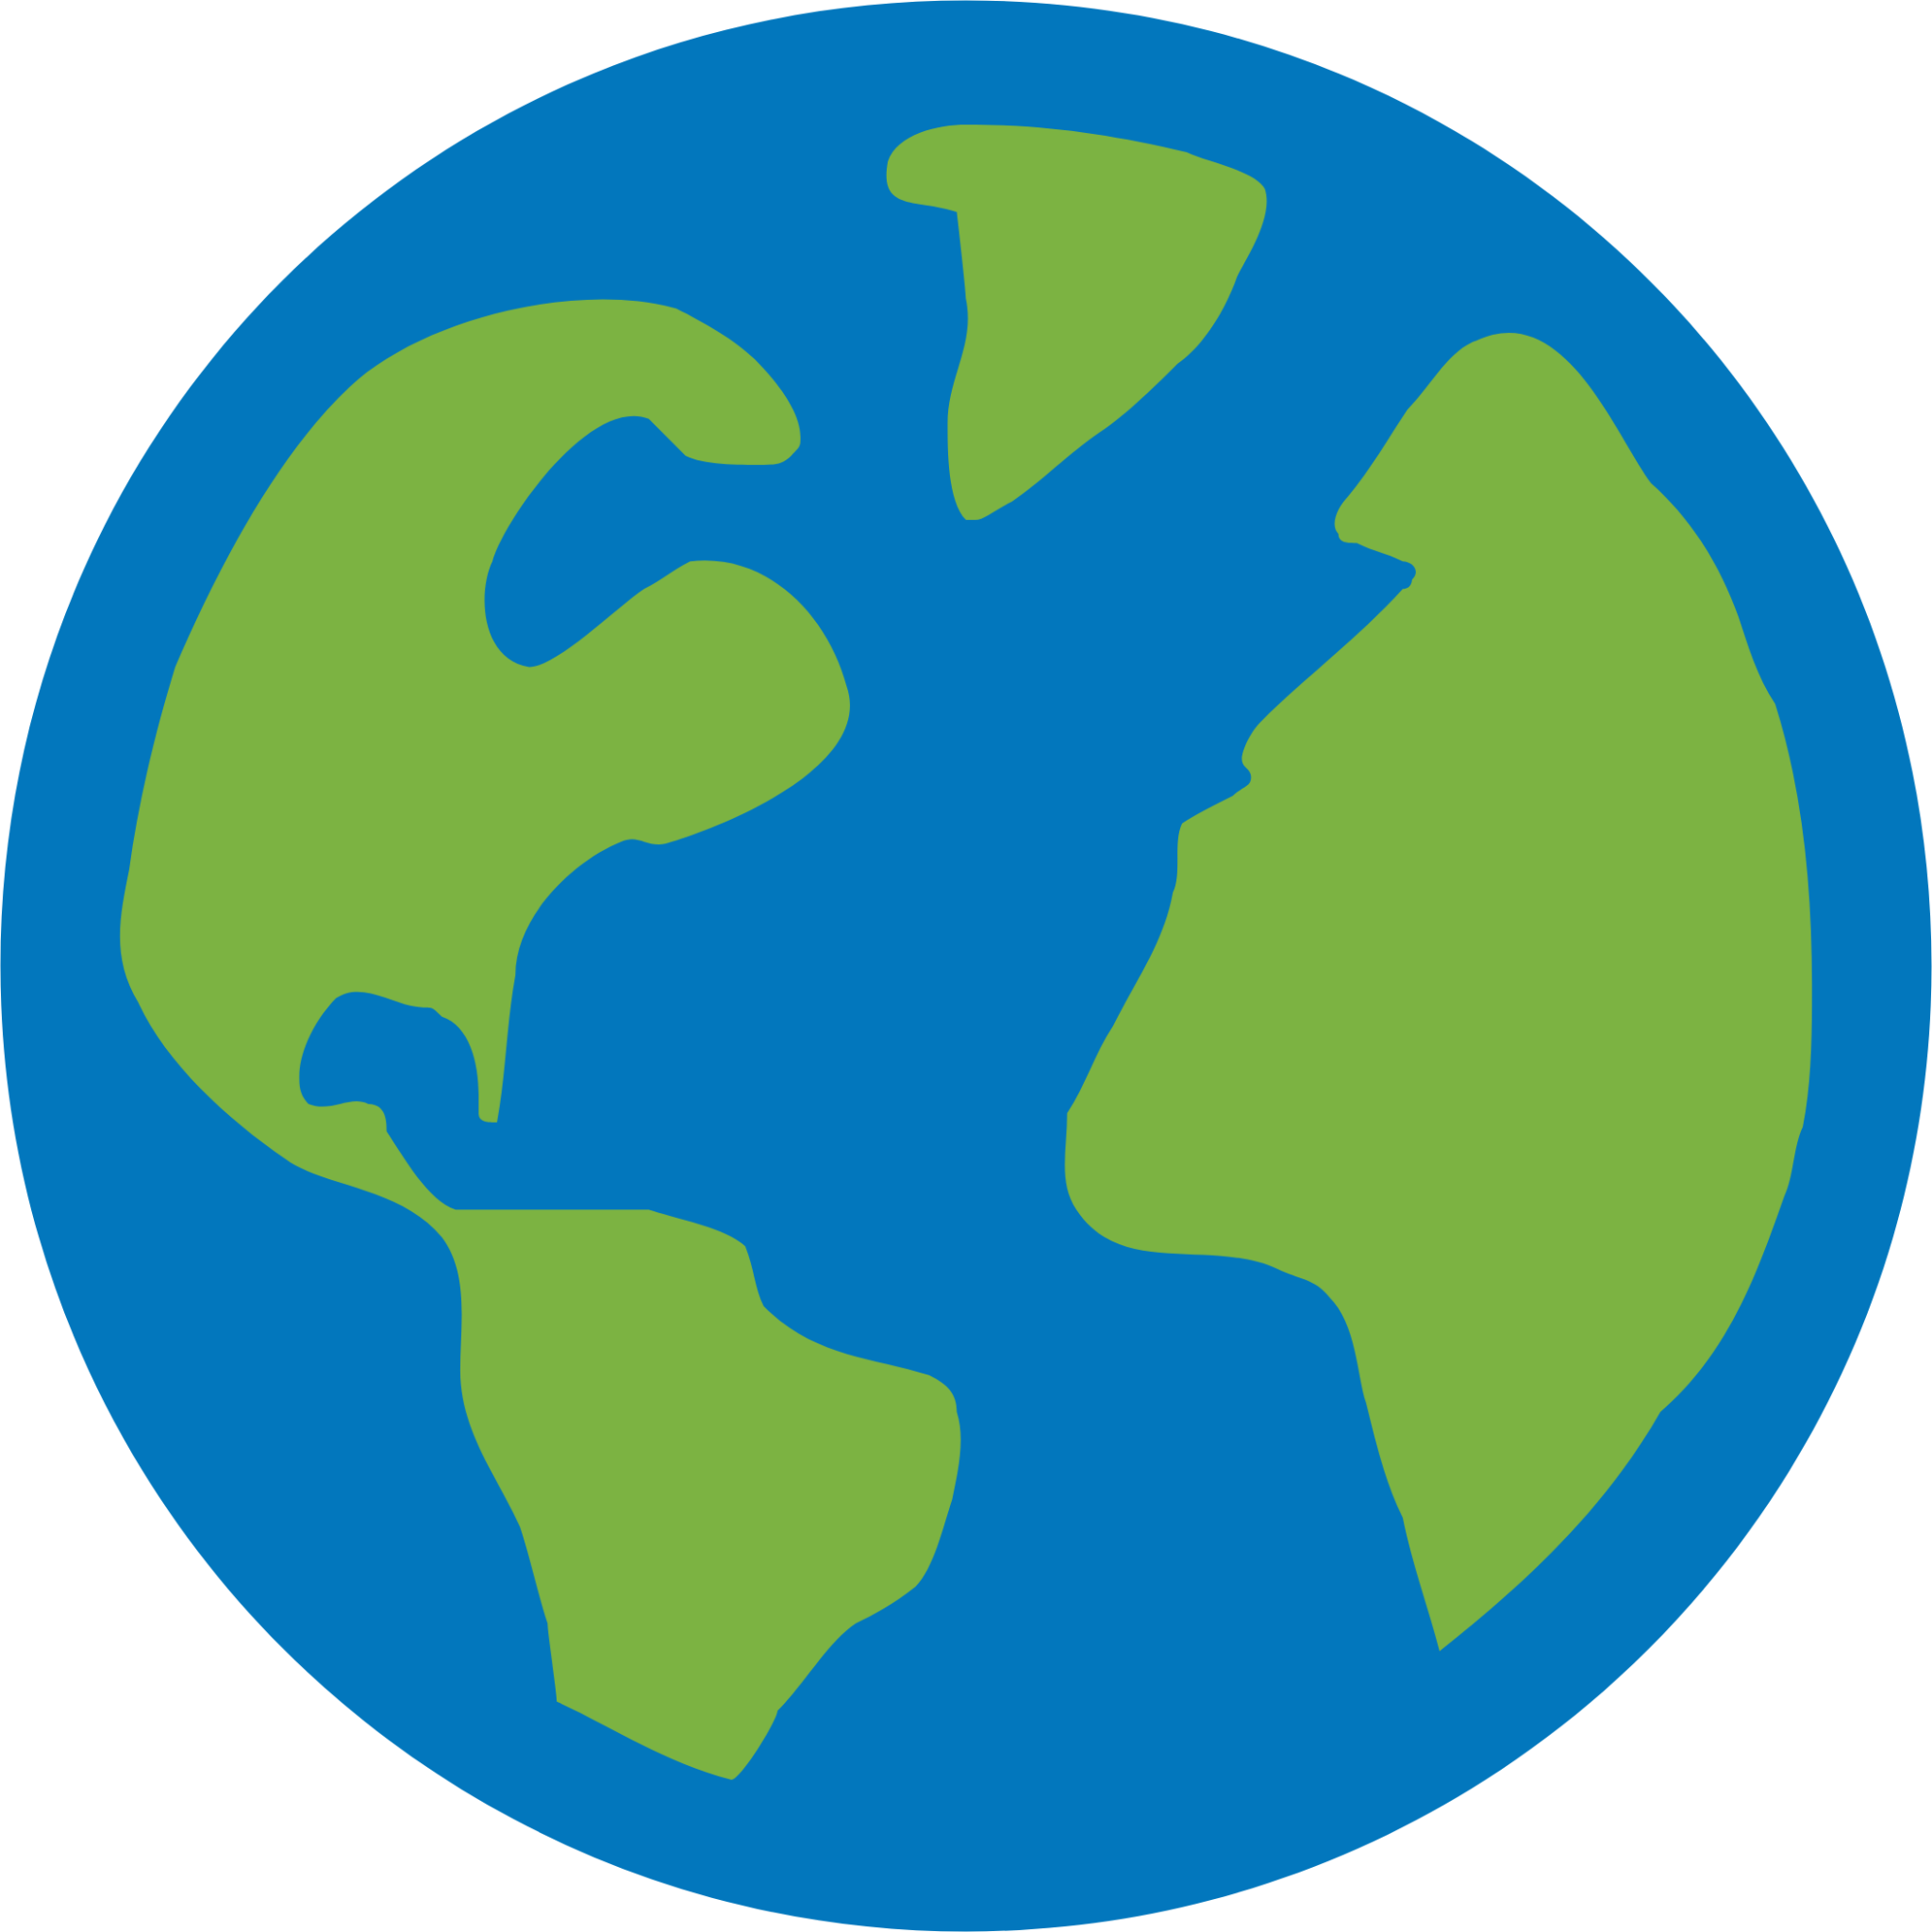 gui globe icon